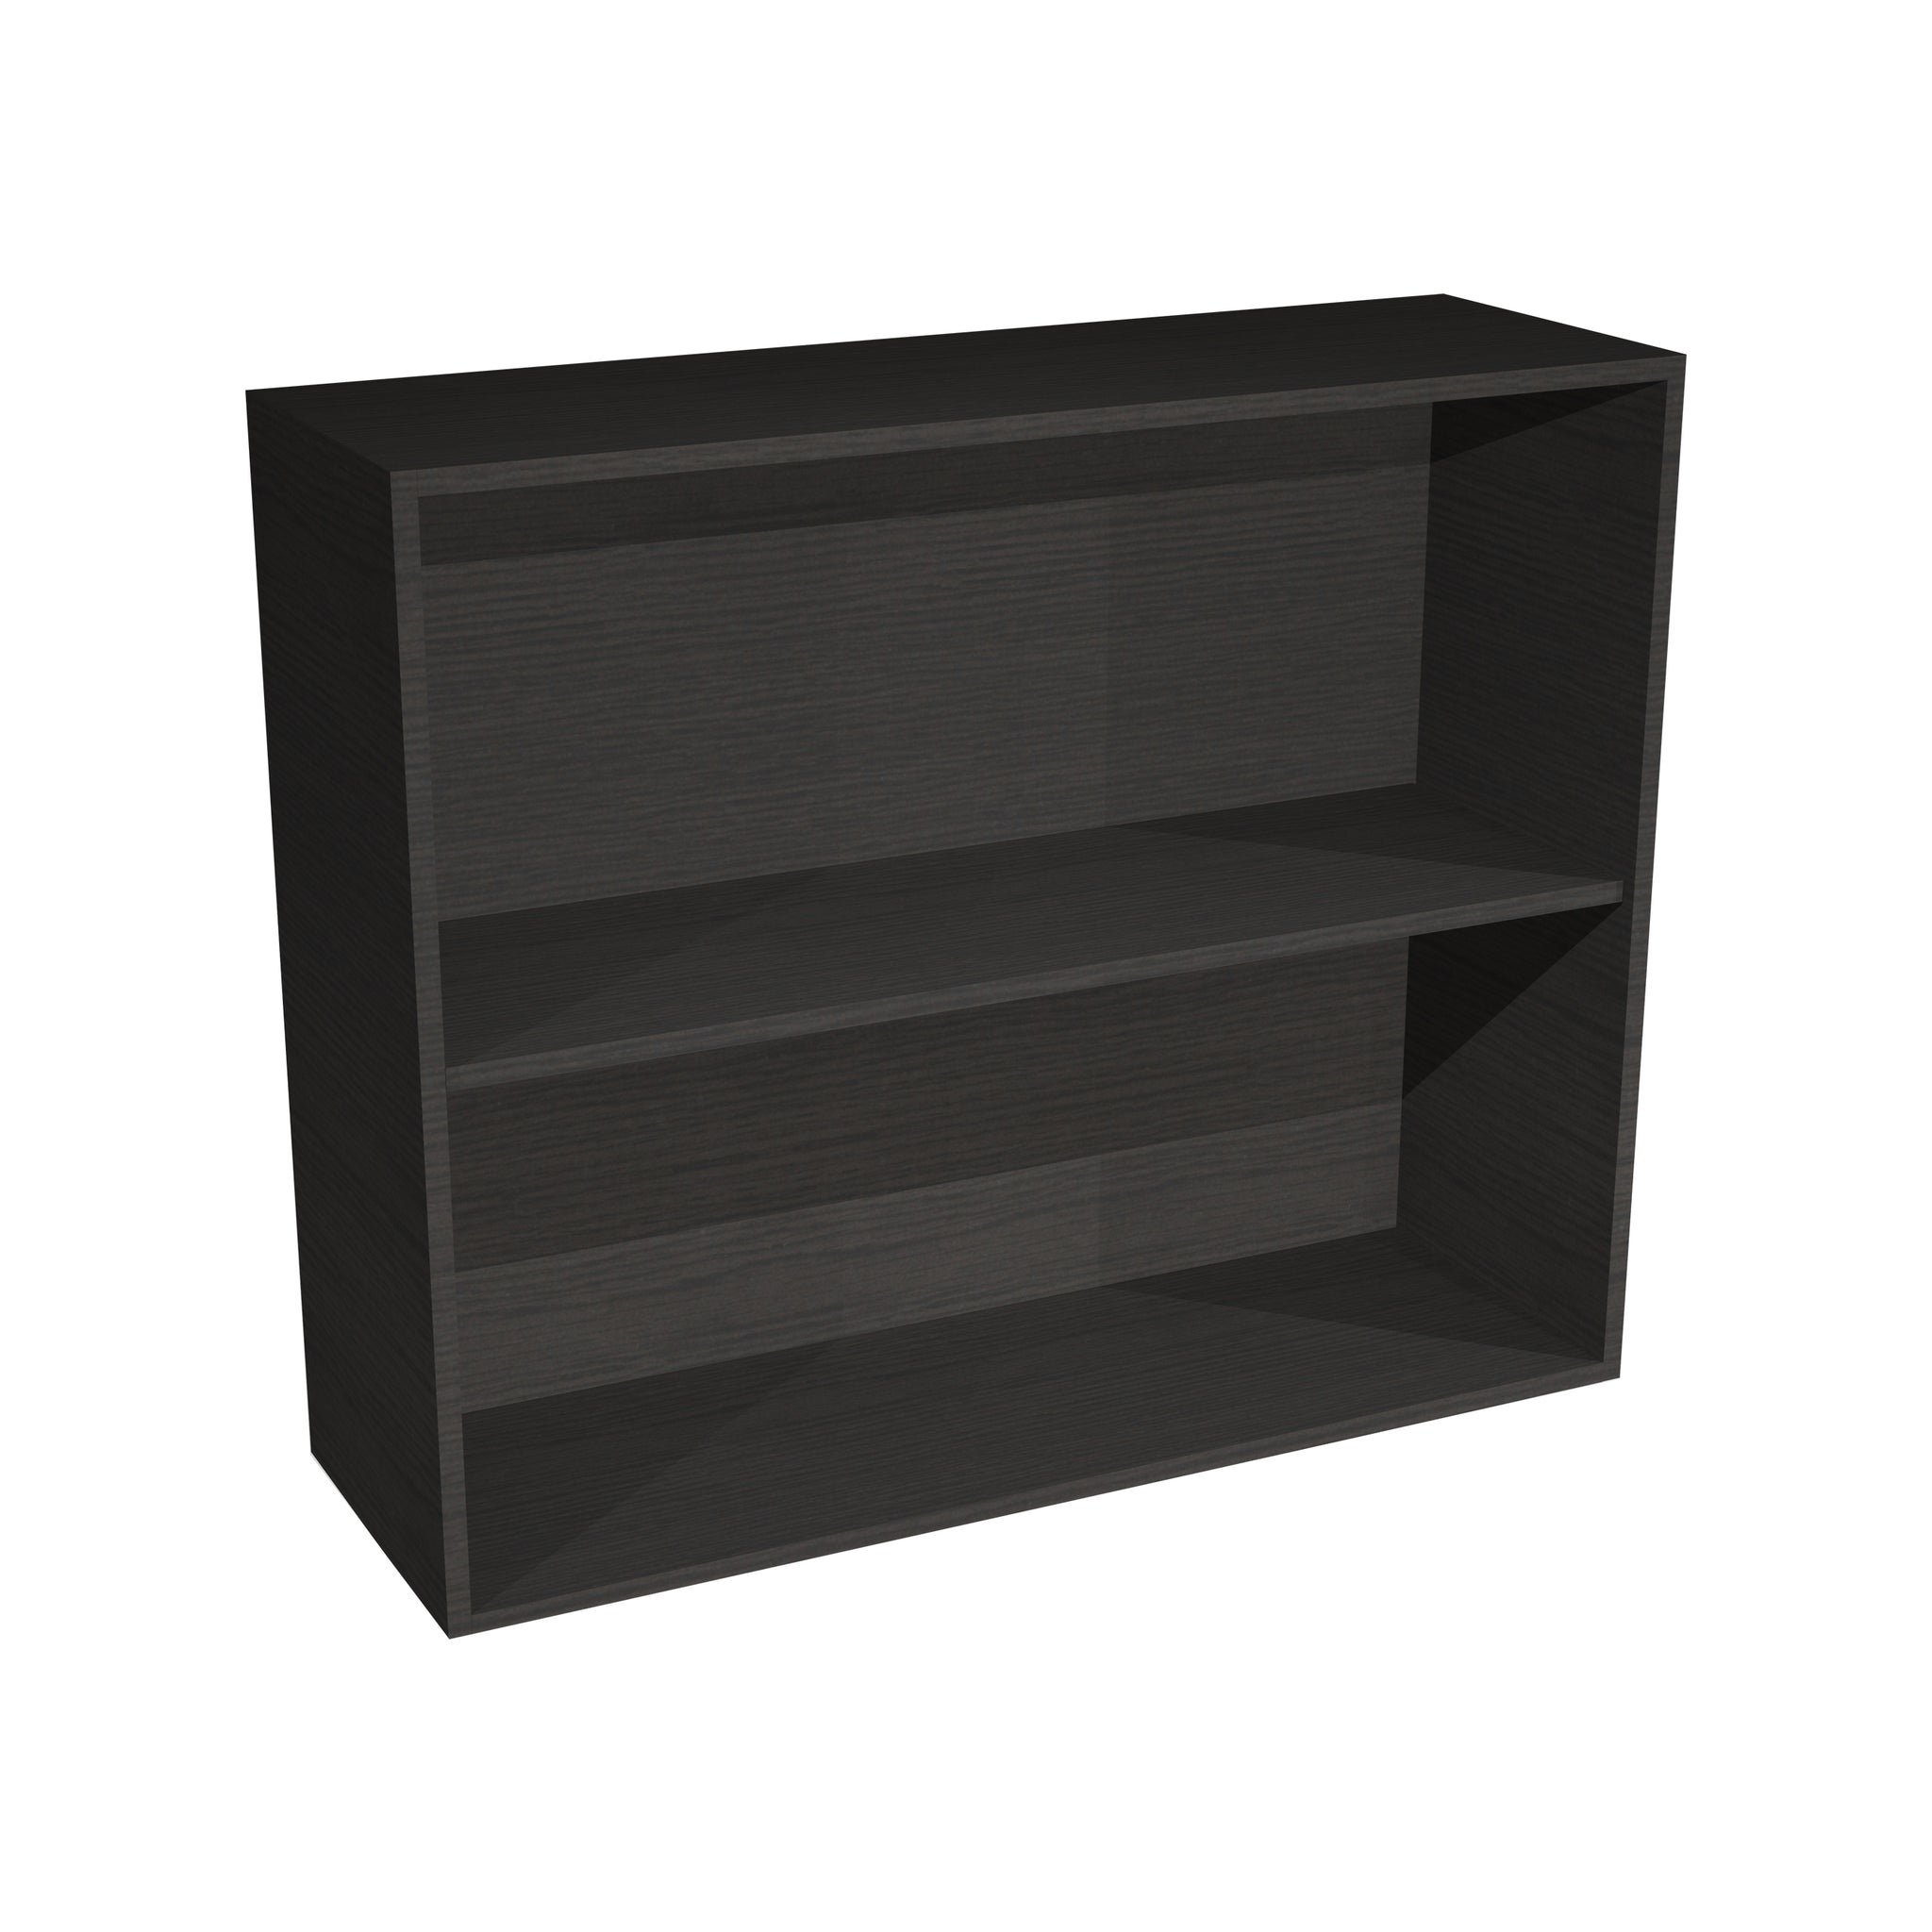 RTA - Dark Wood - Wall Open Cabinet | 36"W x 30"H x 12"D